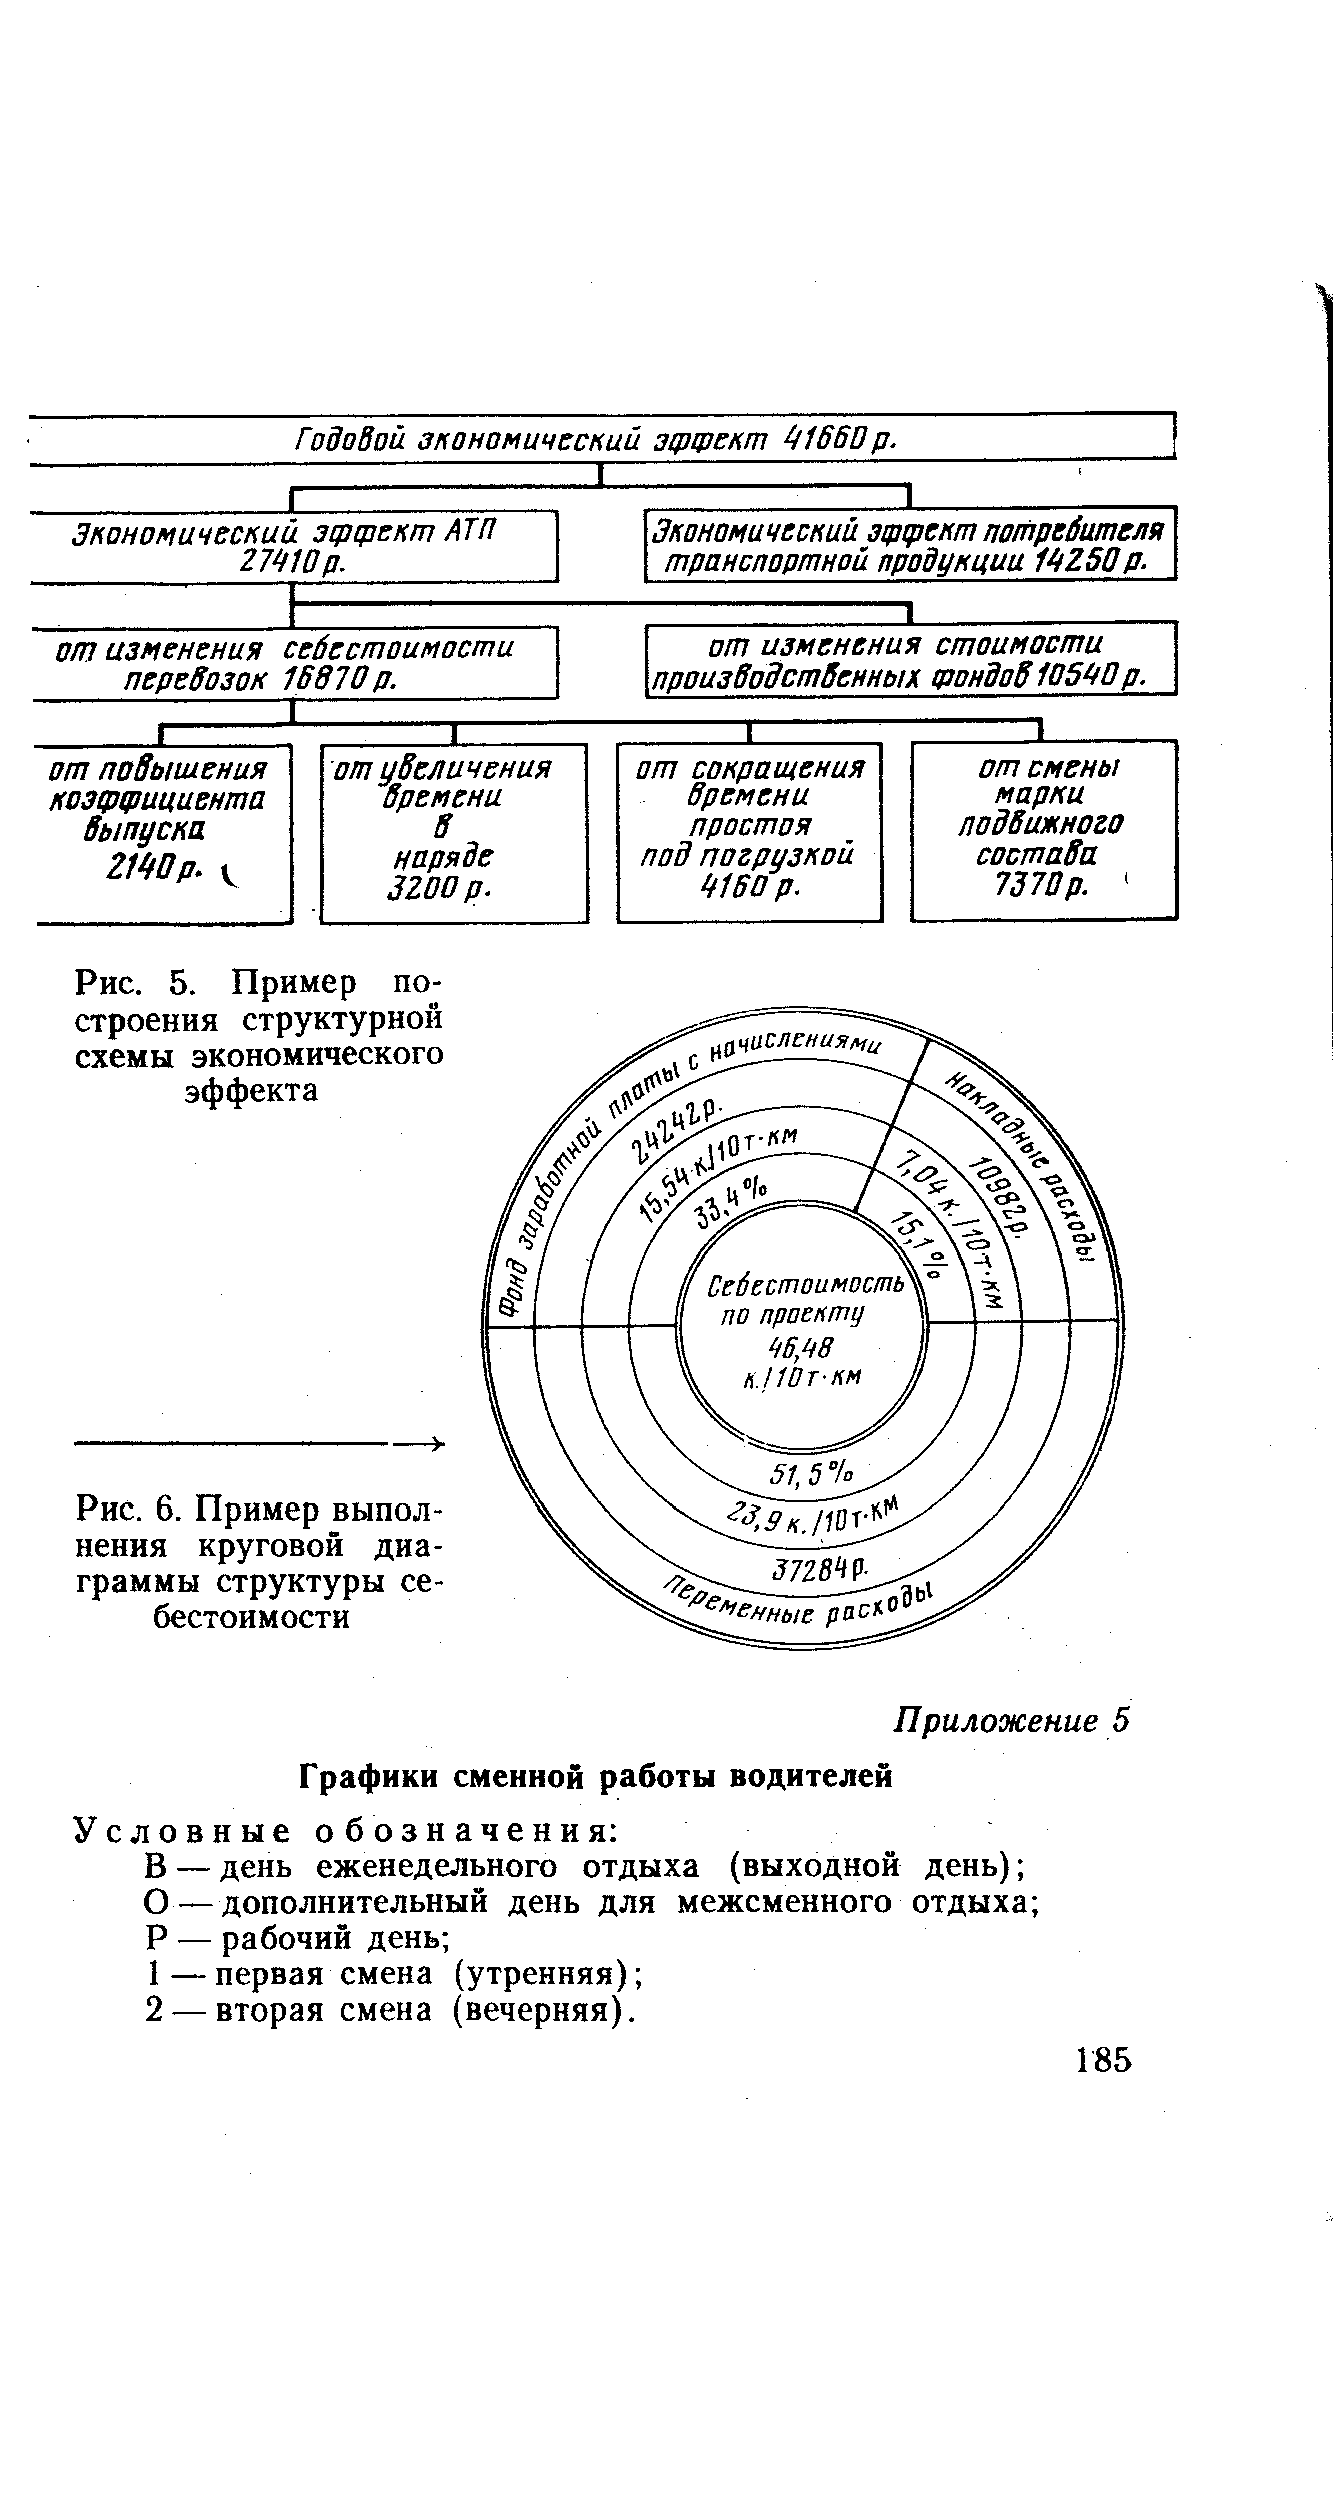 Рис. 6. Пример выполнения круговой диаграммы структуры себестоимости
